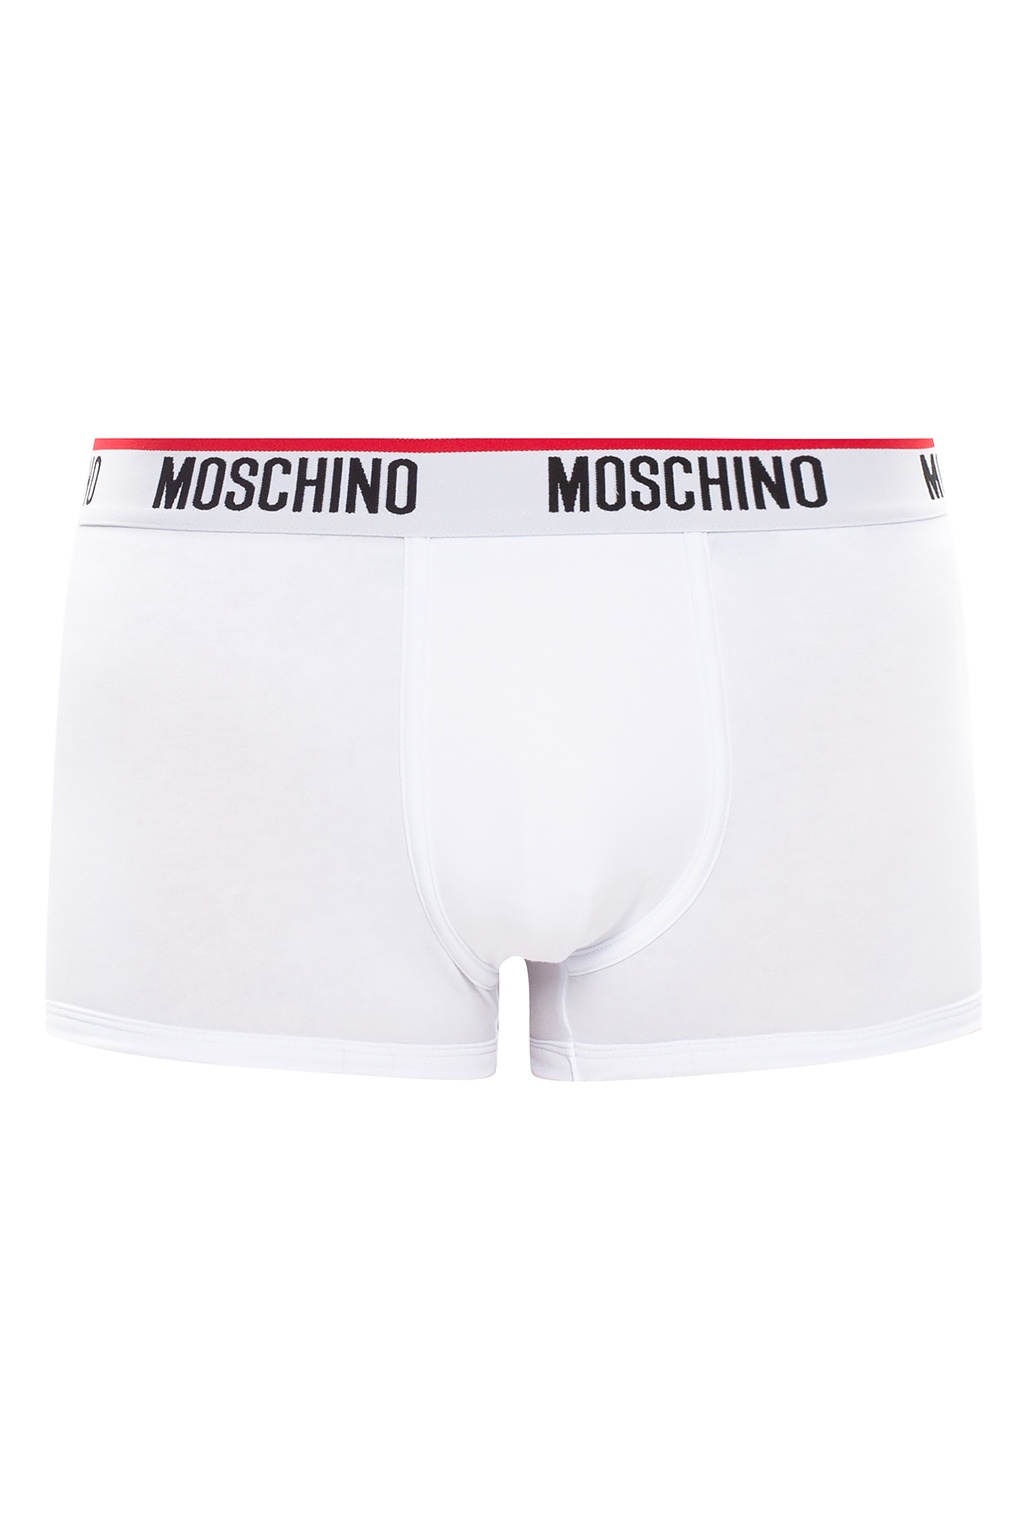 moschino trunks underwear